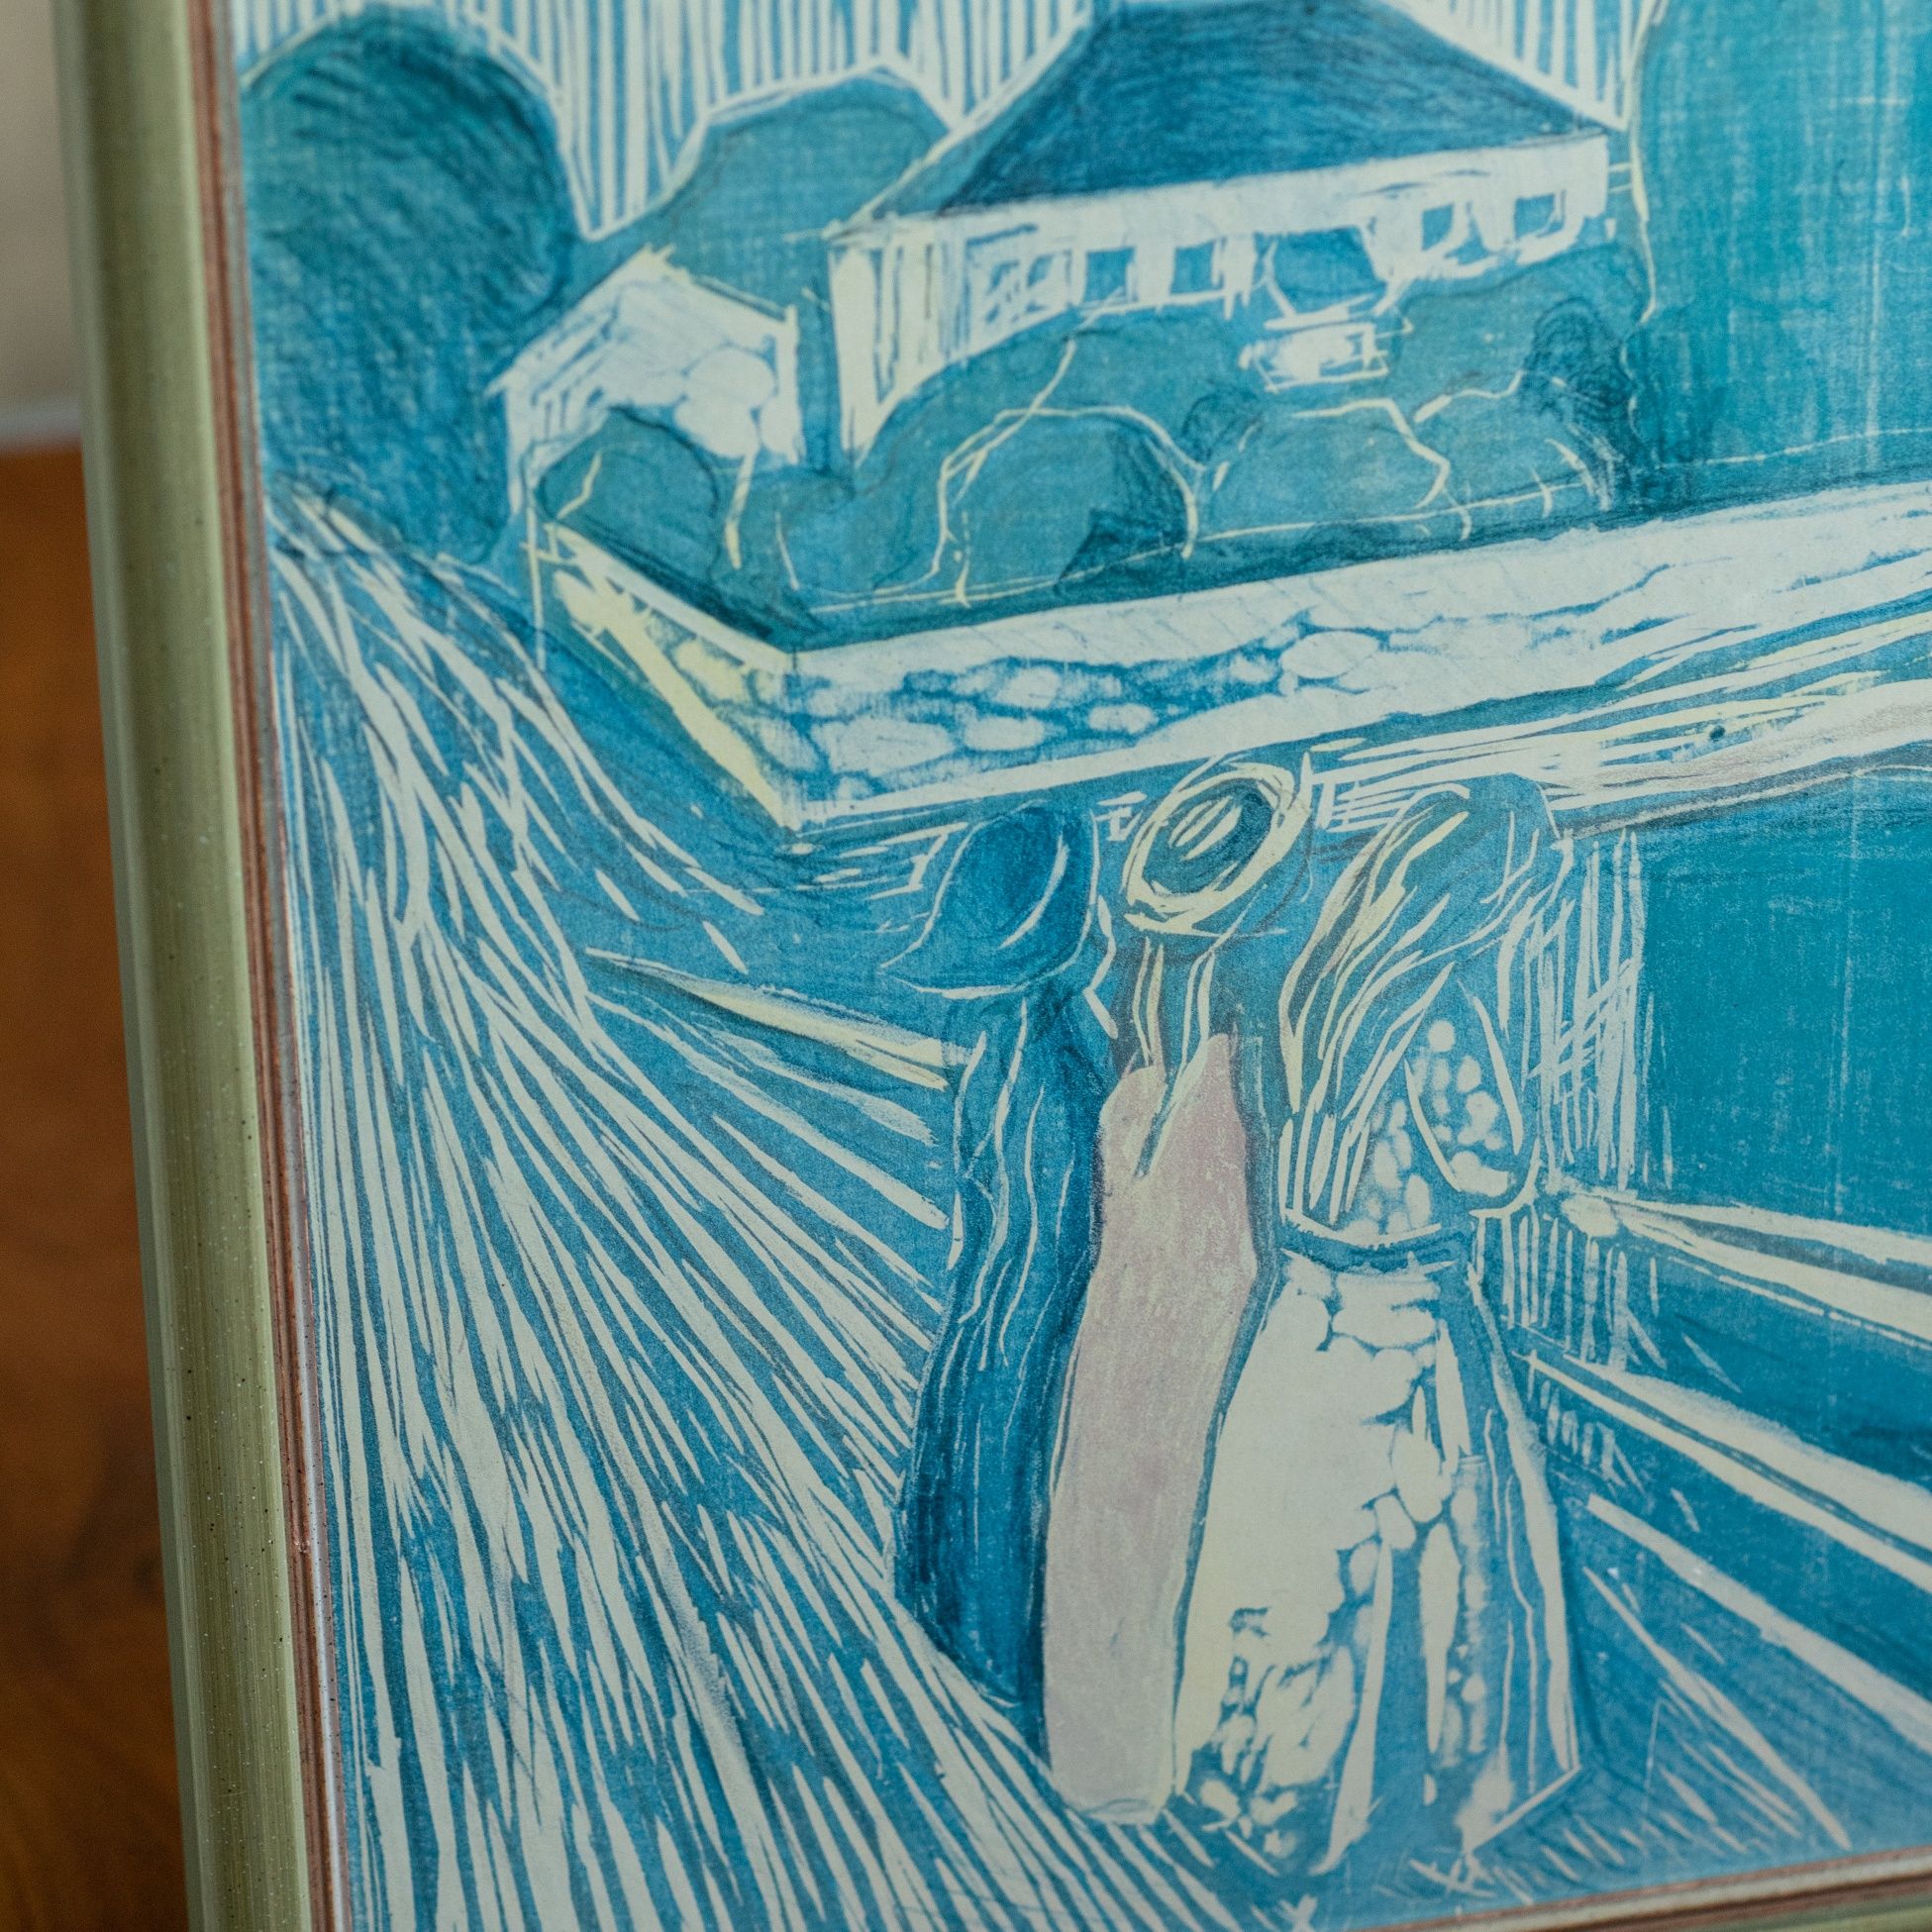 Wydruk Edwarda Muncha na płycie, oprawiony w drewnianą srebrną ramę